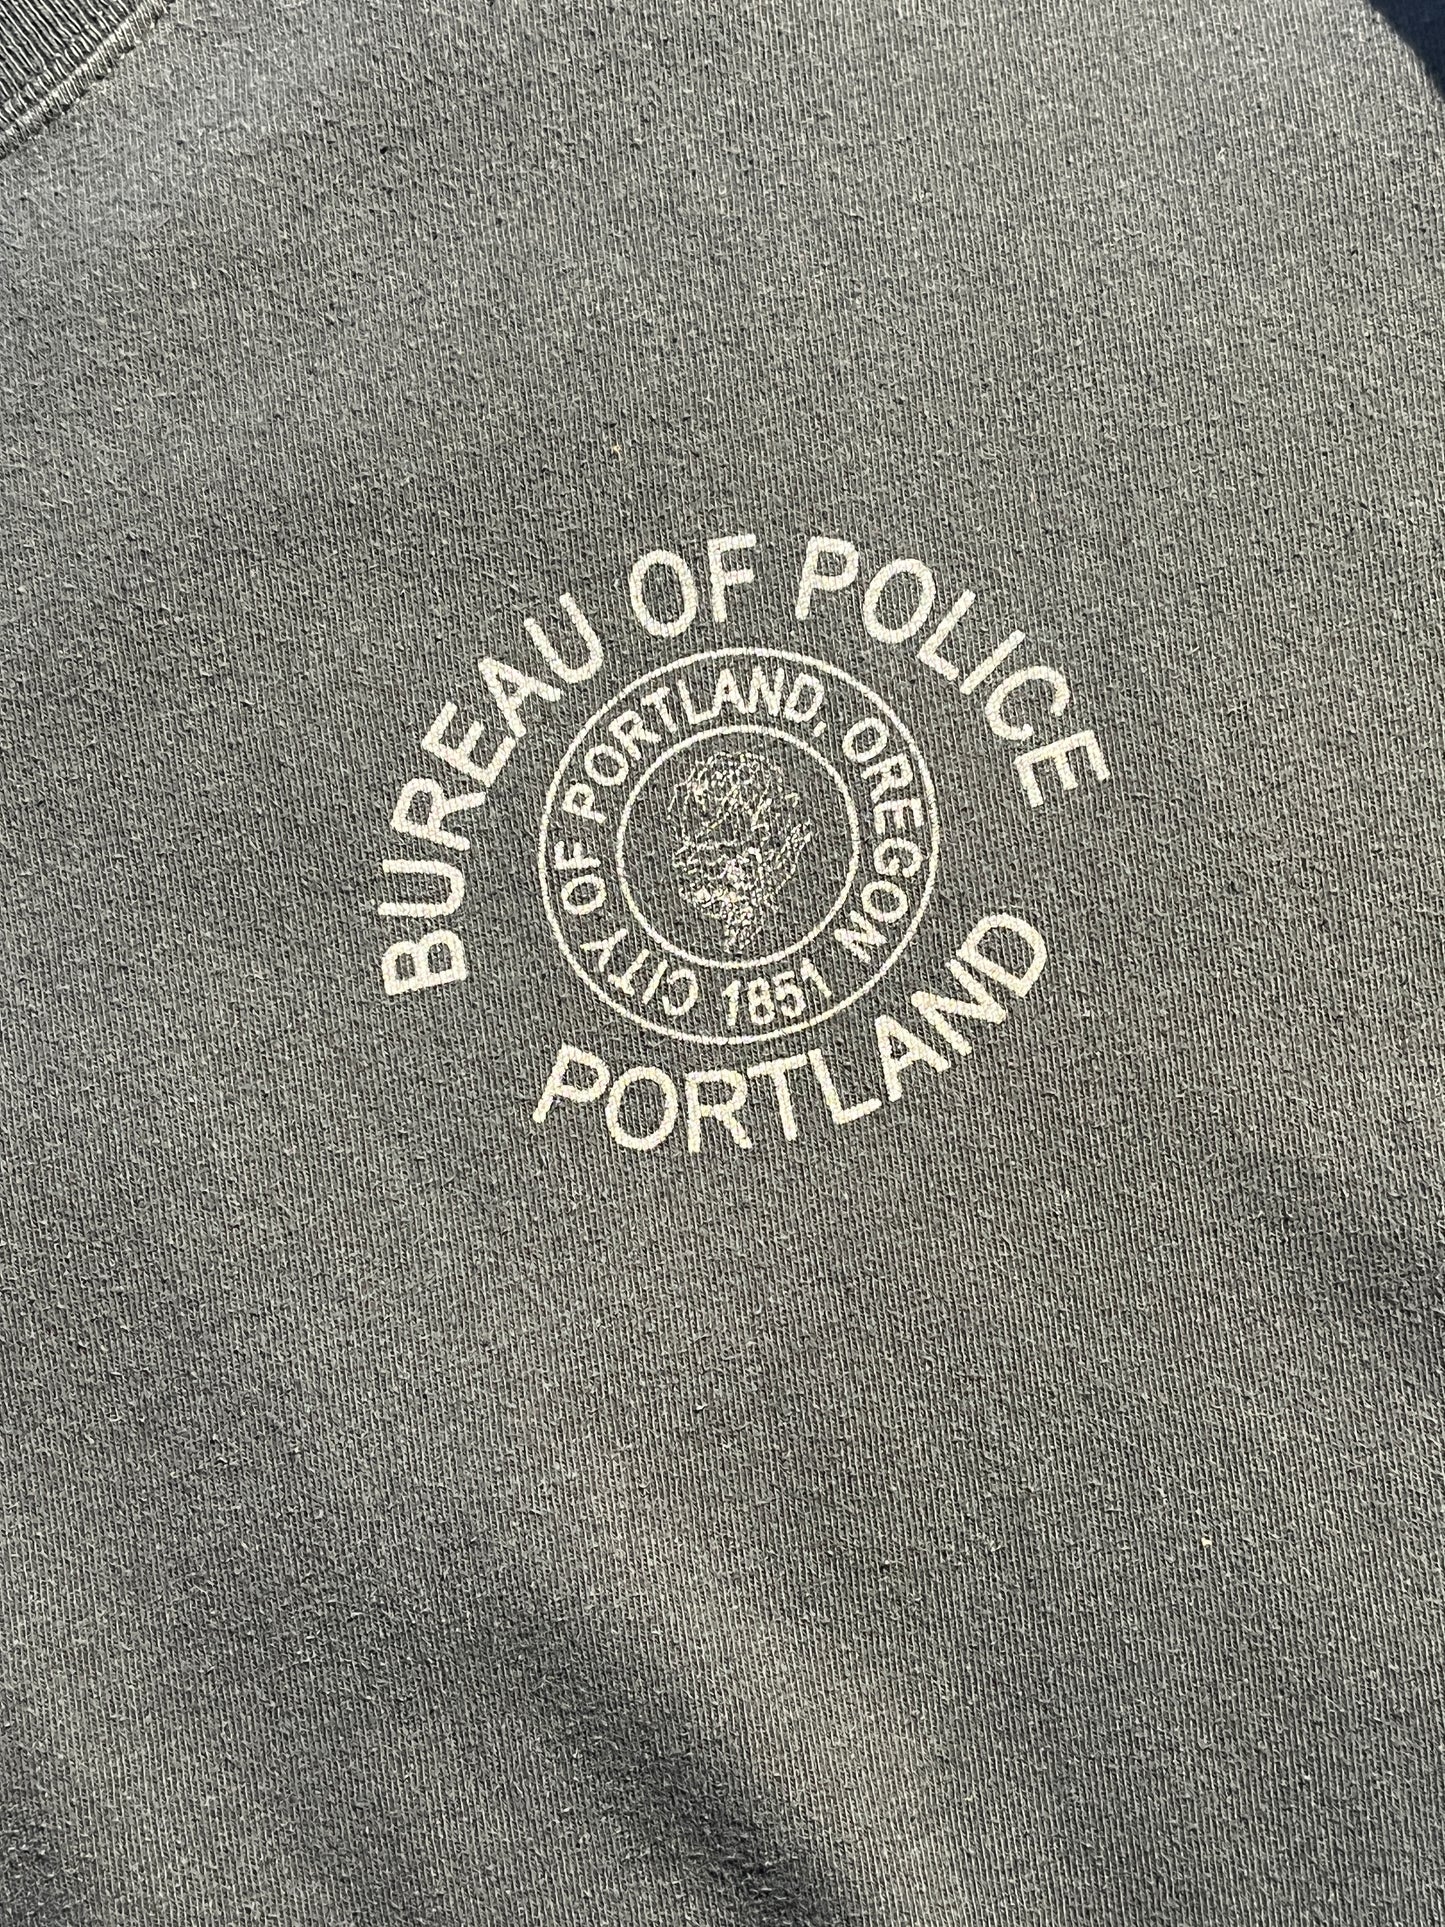 Vintage Portland Police T-Shirt COPS